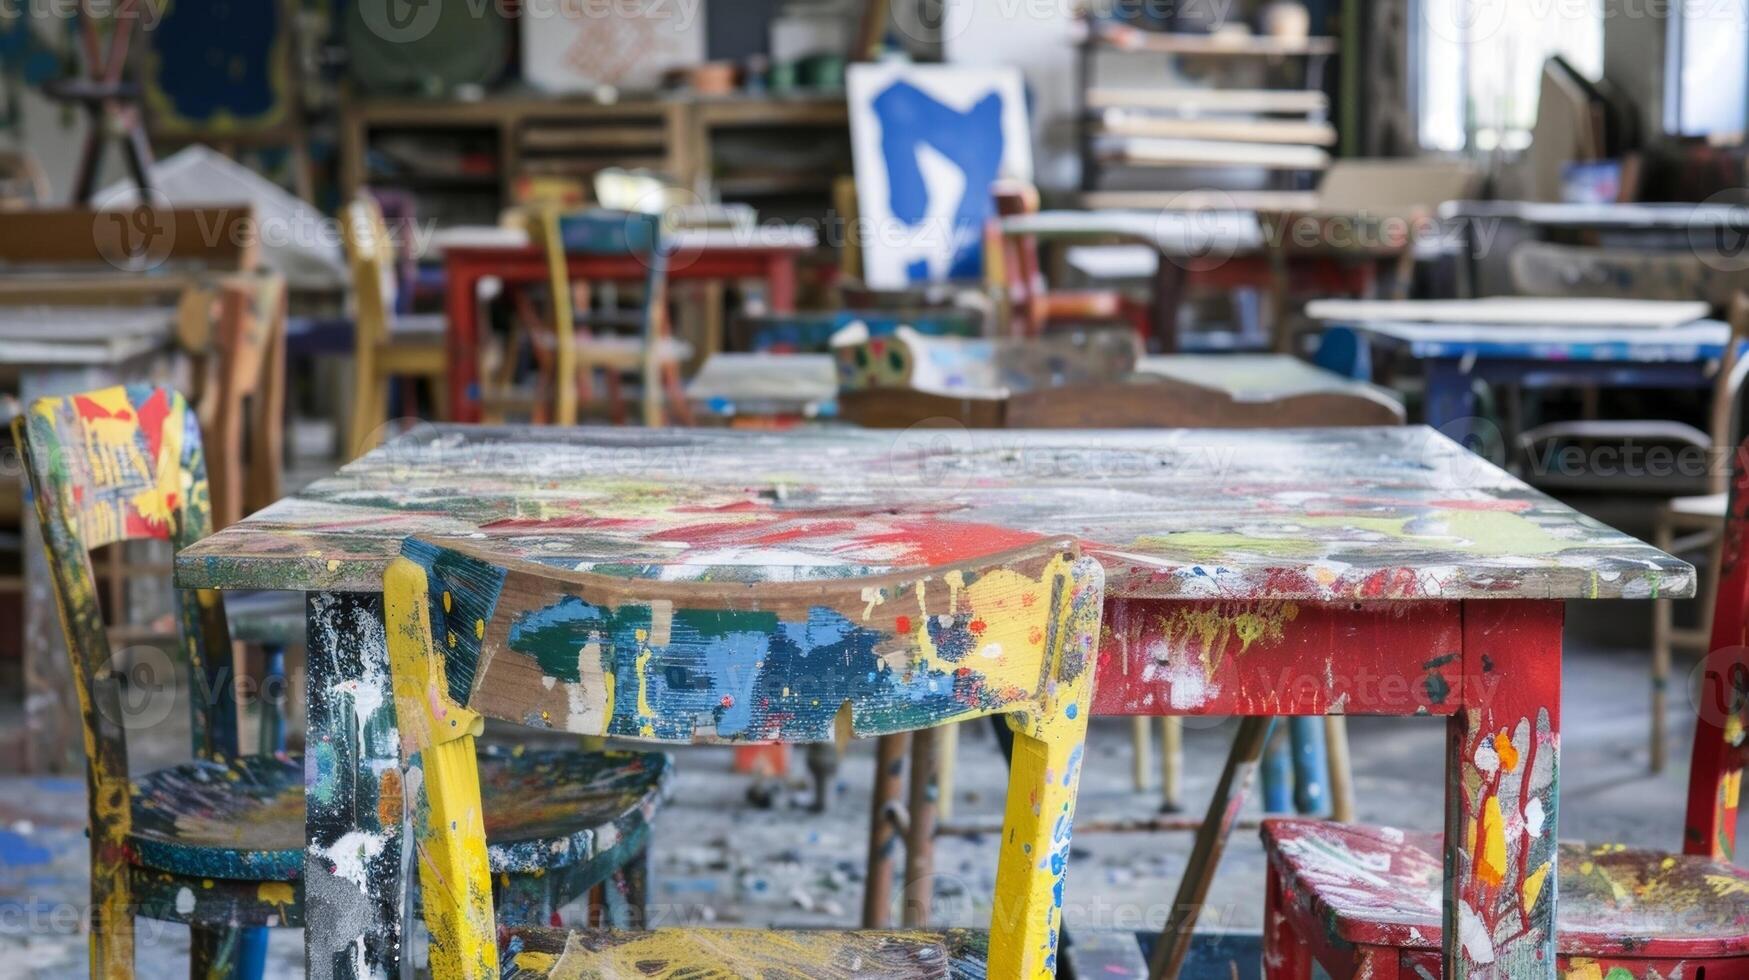 éclaboussé de peinture les tables et chaises testament à le passion et la créativité cette remplit le atelier. 2d plat dessin animé photo